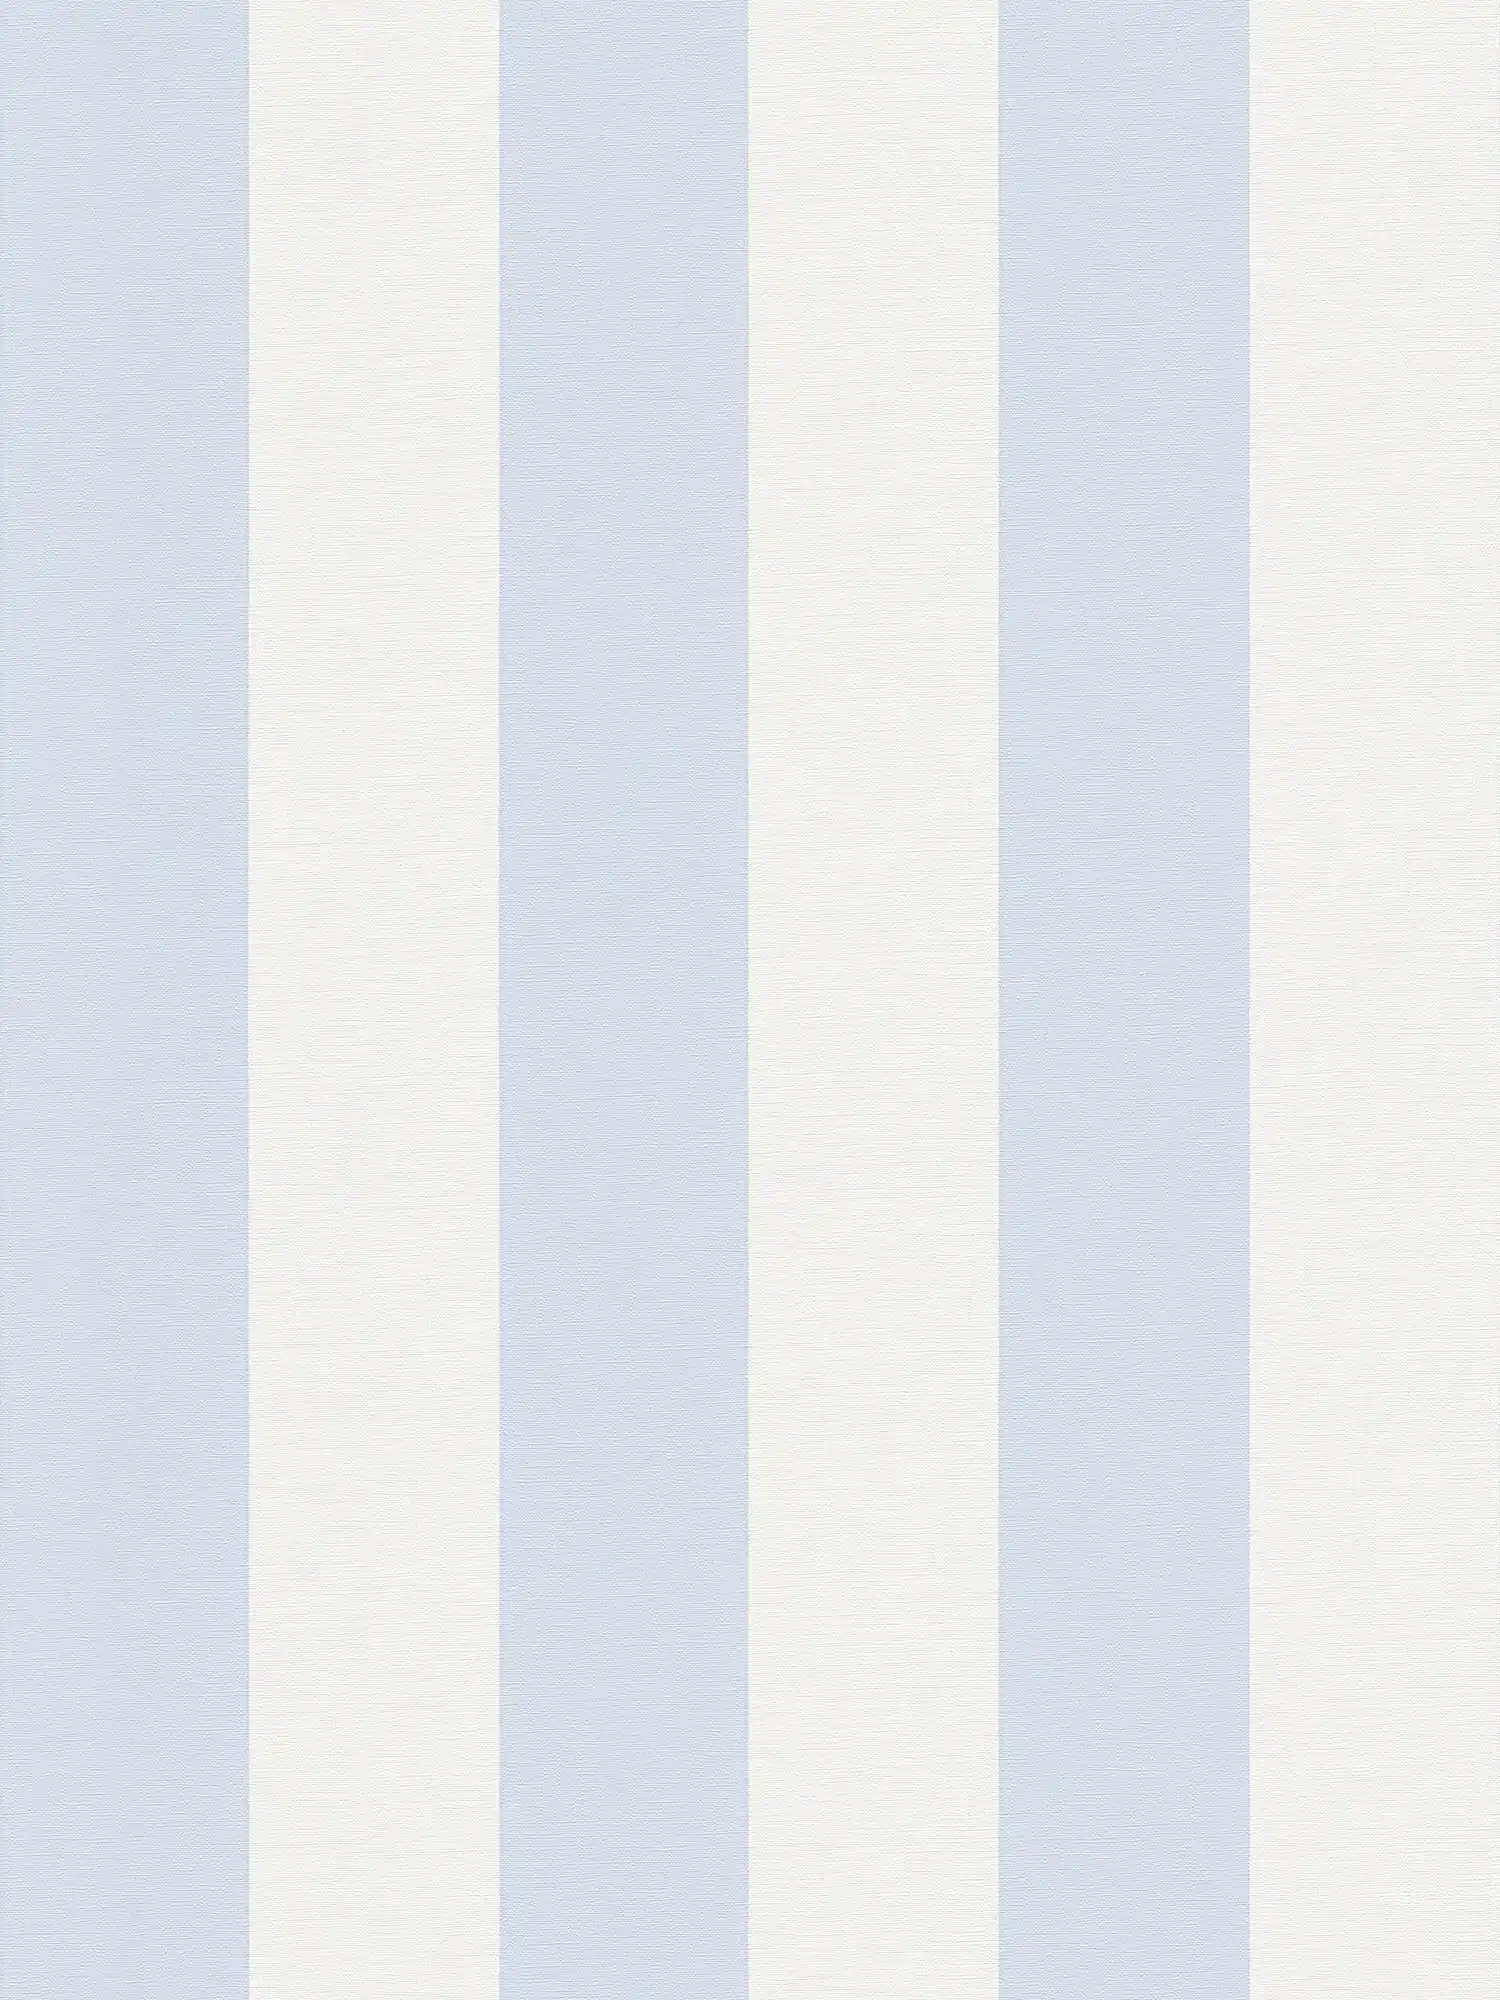 Blokstreepbehang met textiellook voor jong design - blauw, wit
